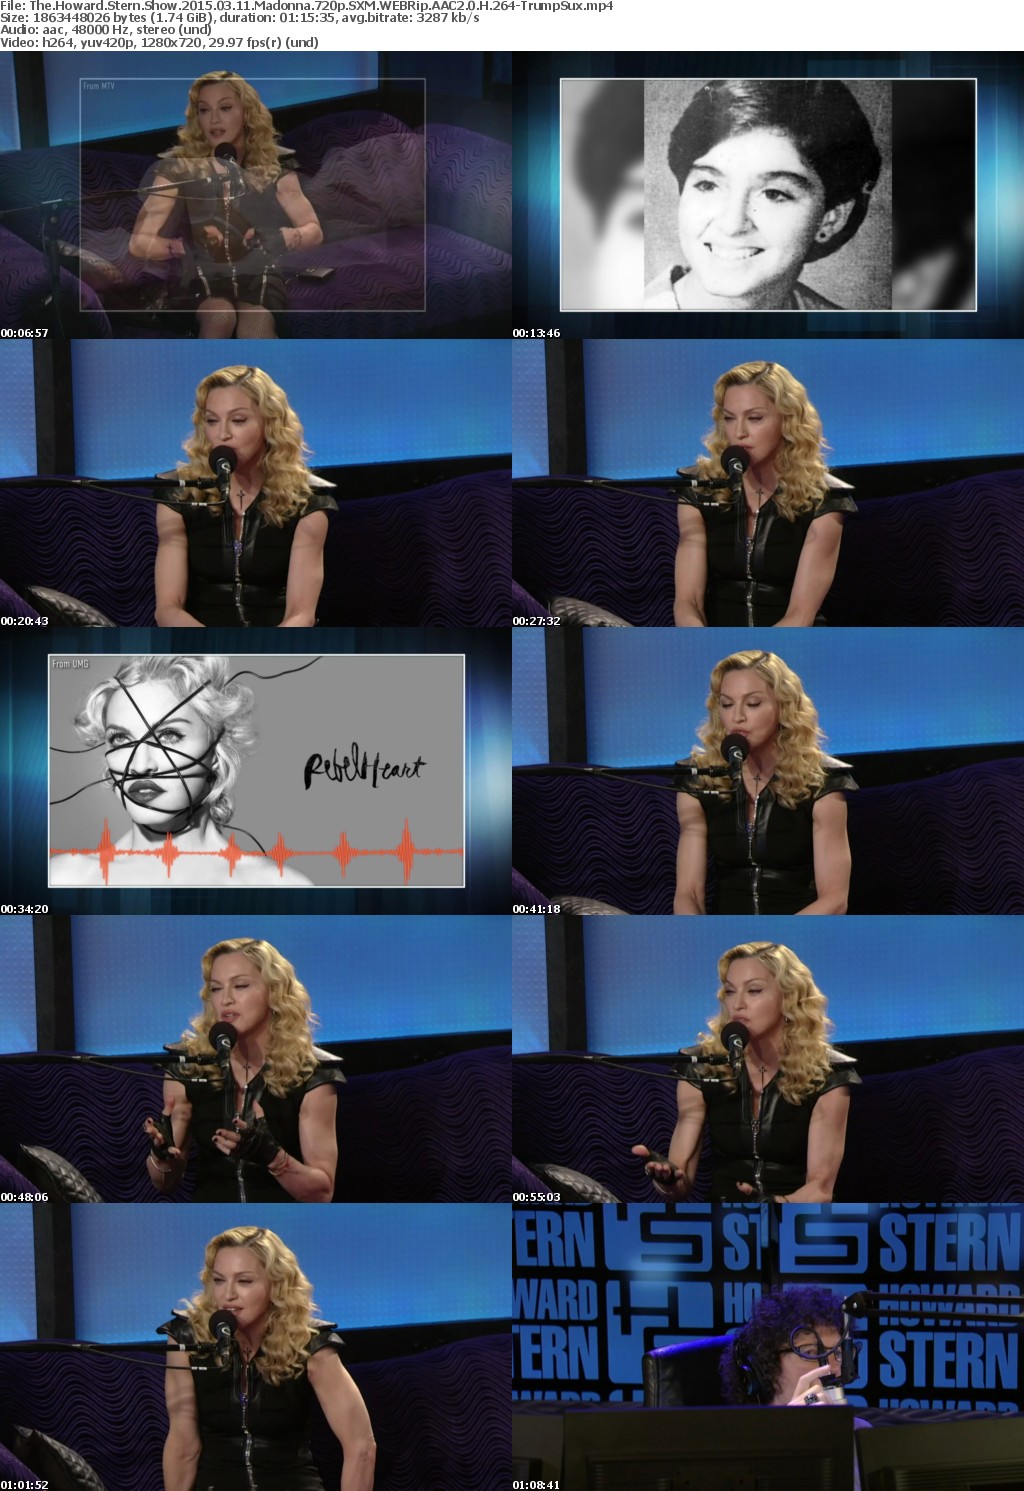 Howard Stern Show 2015 03 11 Madonna 720p Dbaum2